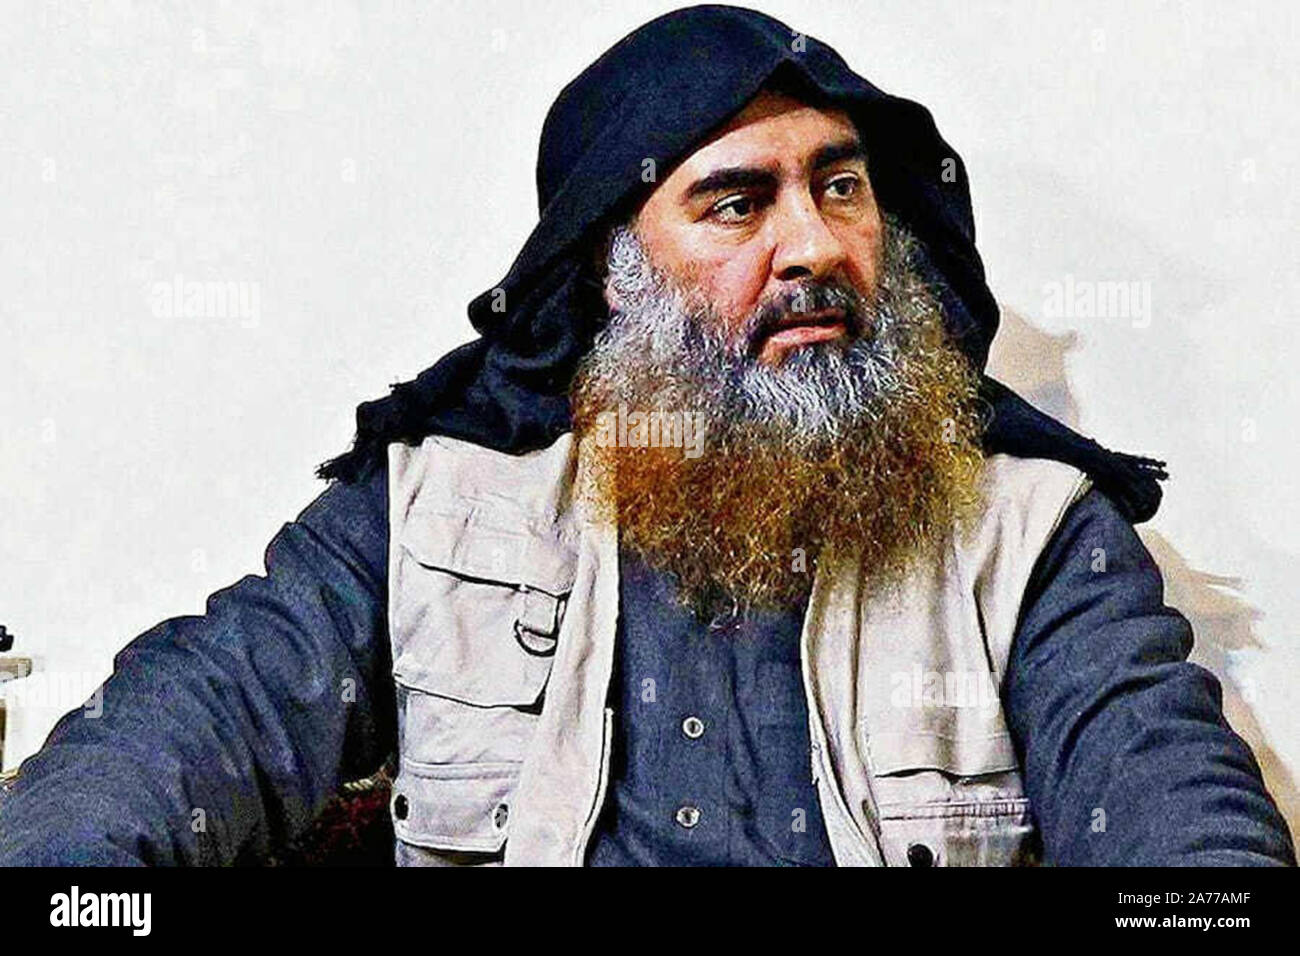 Washington, Estados Unidos. 30 Oct, 2019. Foto de archivo de Abu Bakr al-Baghdadi, líder del Estado Islámico de Iraq y el Levante (ISIL). Baghdadi mató el 26 de octubre de 2019, durante una redada de las fuerzas estadounidenses de operaciones especiales en su compuesto en el noroeste de Siria. Foto cortesía del Departamento de Defensa/UPI Crédito: UPI/Alamy Live News Foto de stock